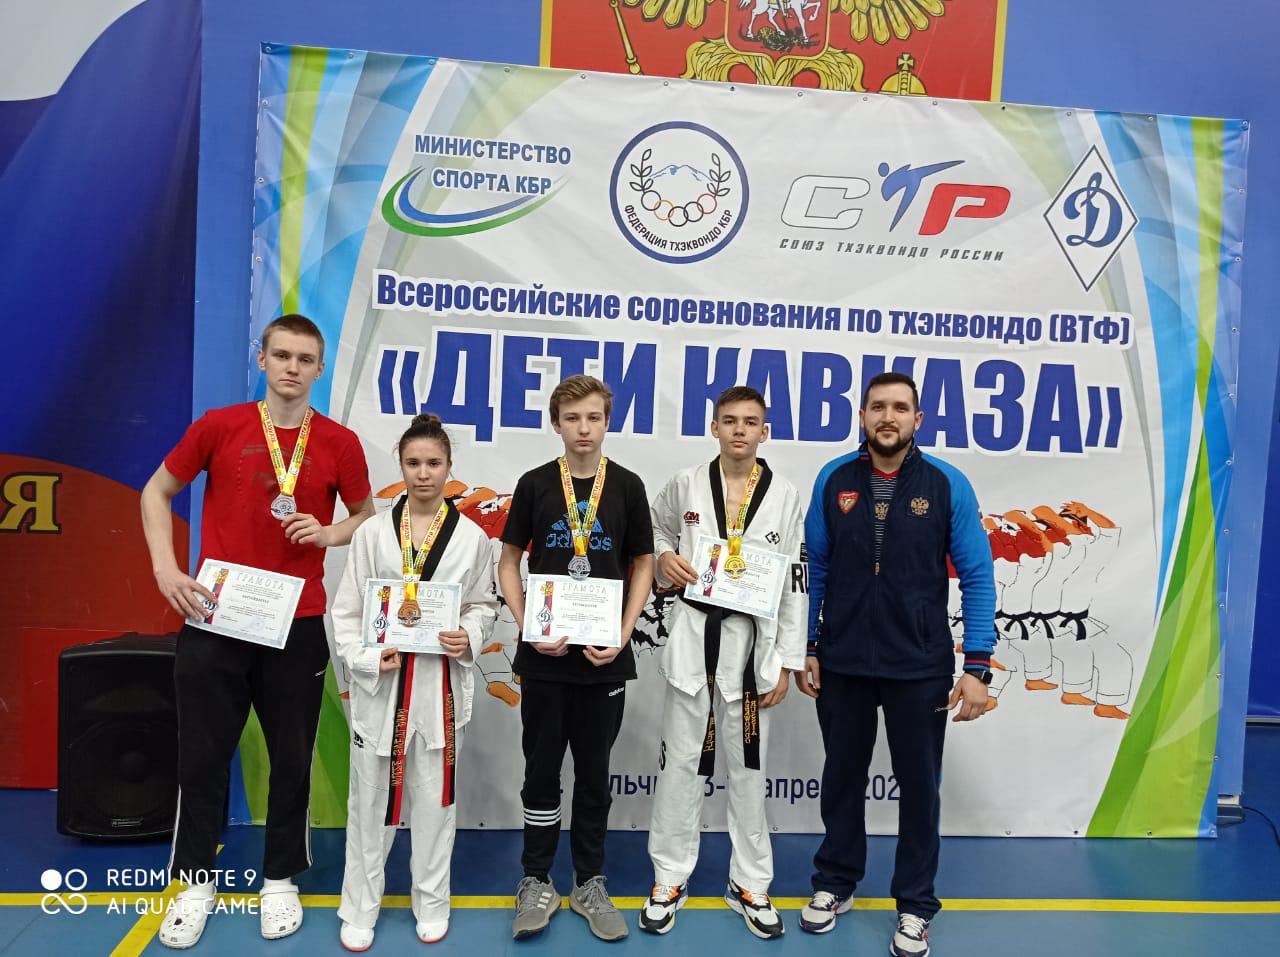 Батайчане - призеры всероссийского турнира по тхэквондо